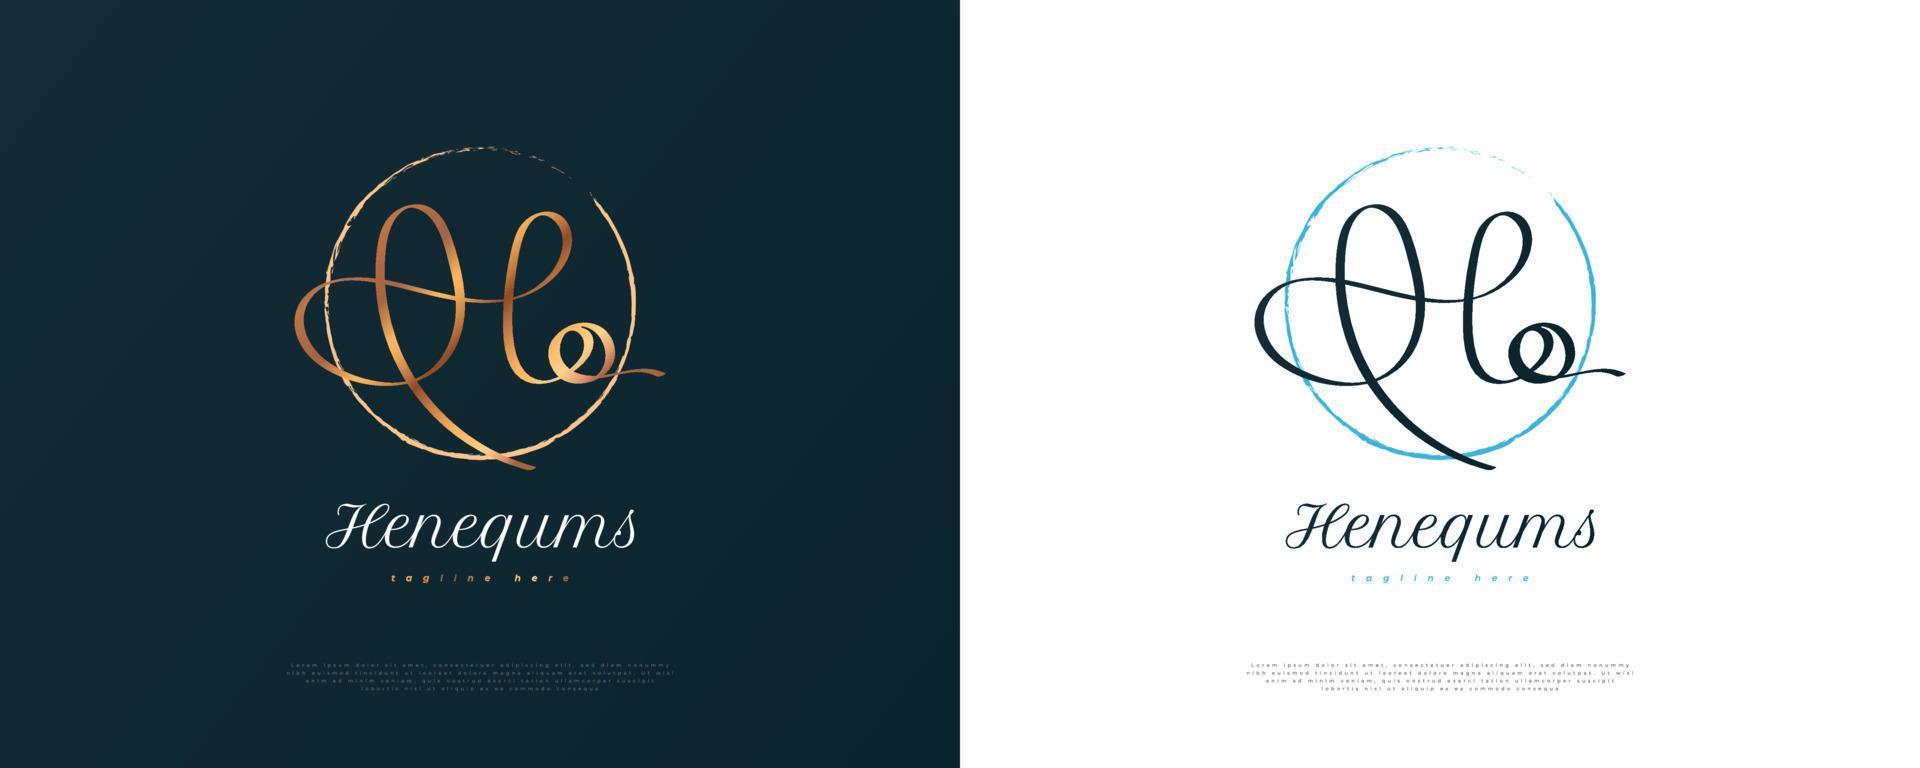 hq eerste handtekening logo-ontwerp met gouden handschriftstijl. eerste h en q logo-ontwerp voor bruiloft, mode, sieraden, boetiek en zakelijke merkidentiteit vector